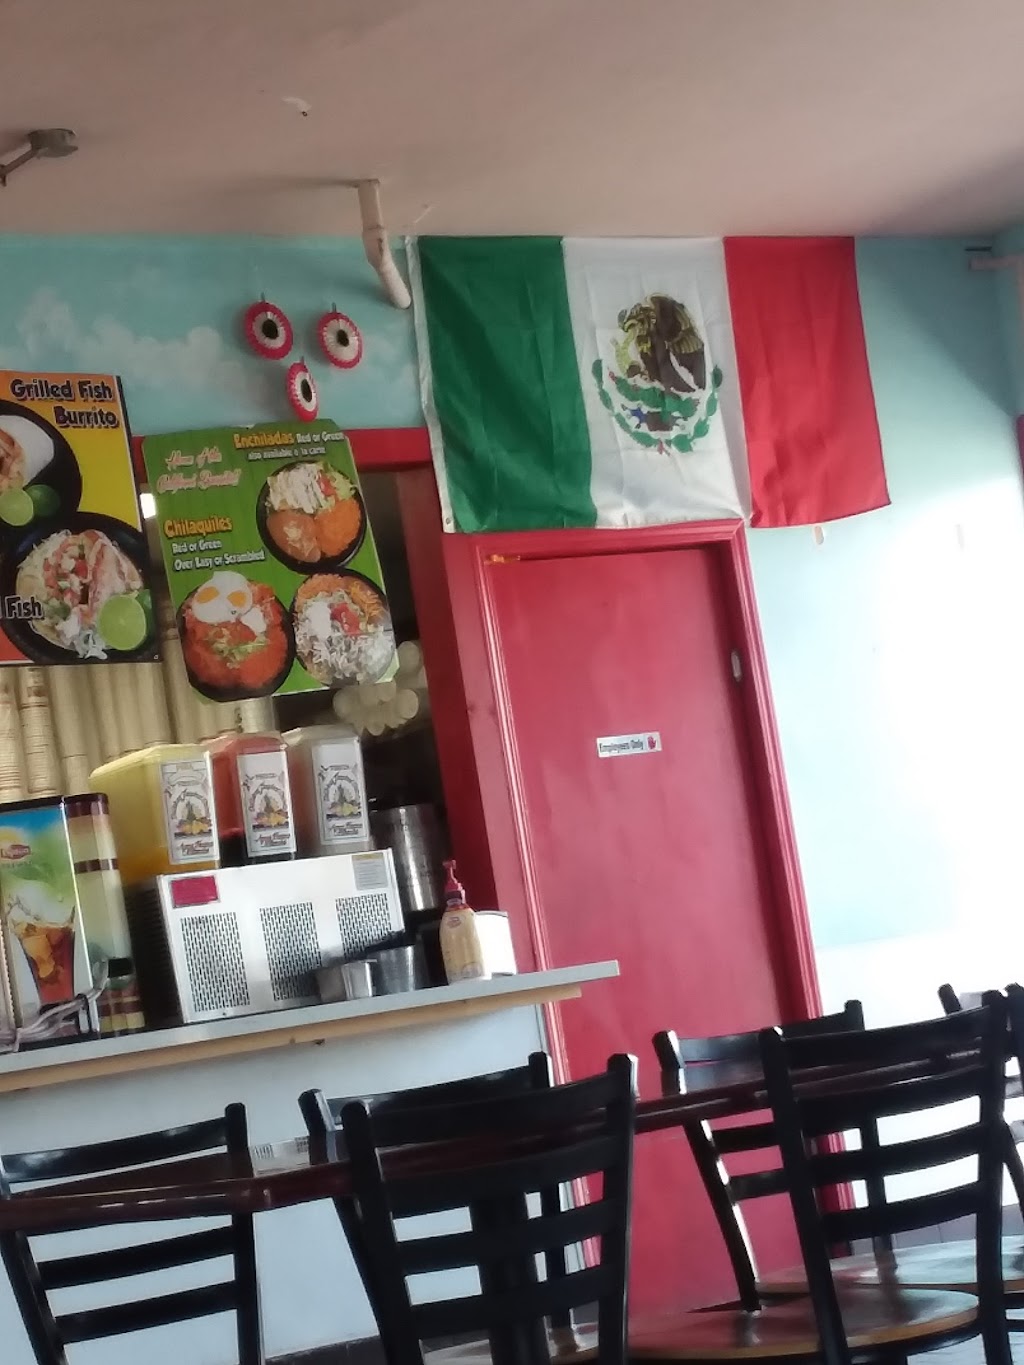 Castañedas Mexican Food | 1990 E Florida Ave, Hemet, CA 92544, USA | Phone: (951) 492-0604